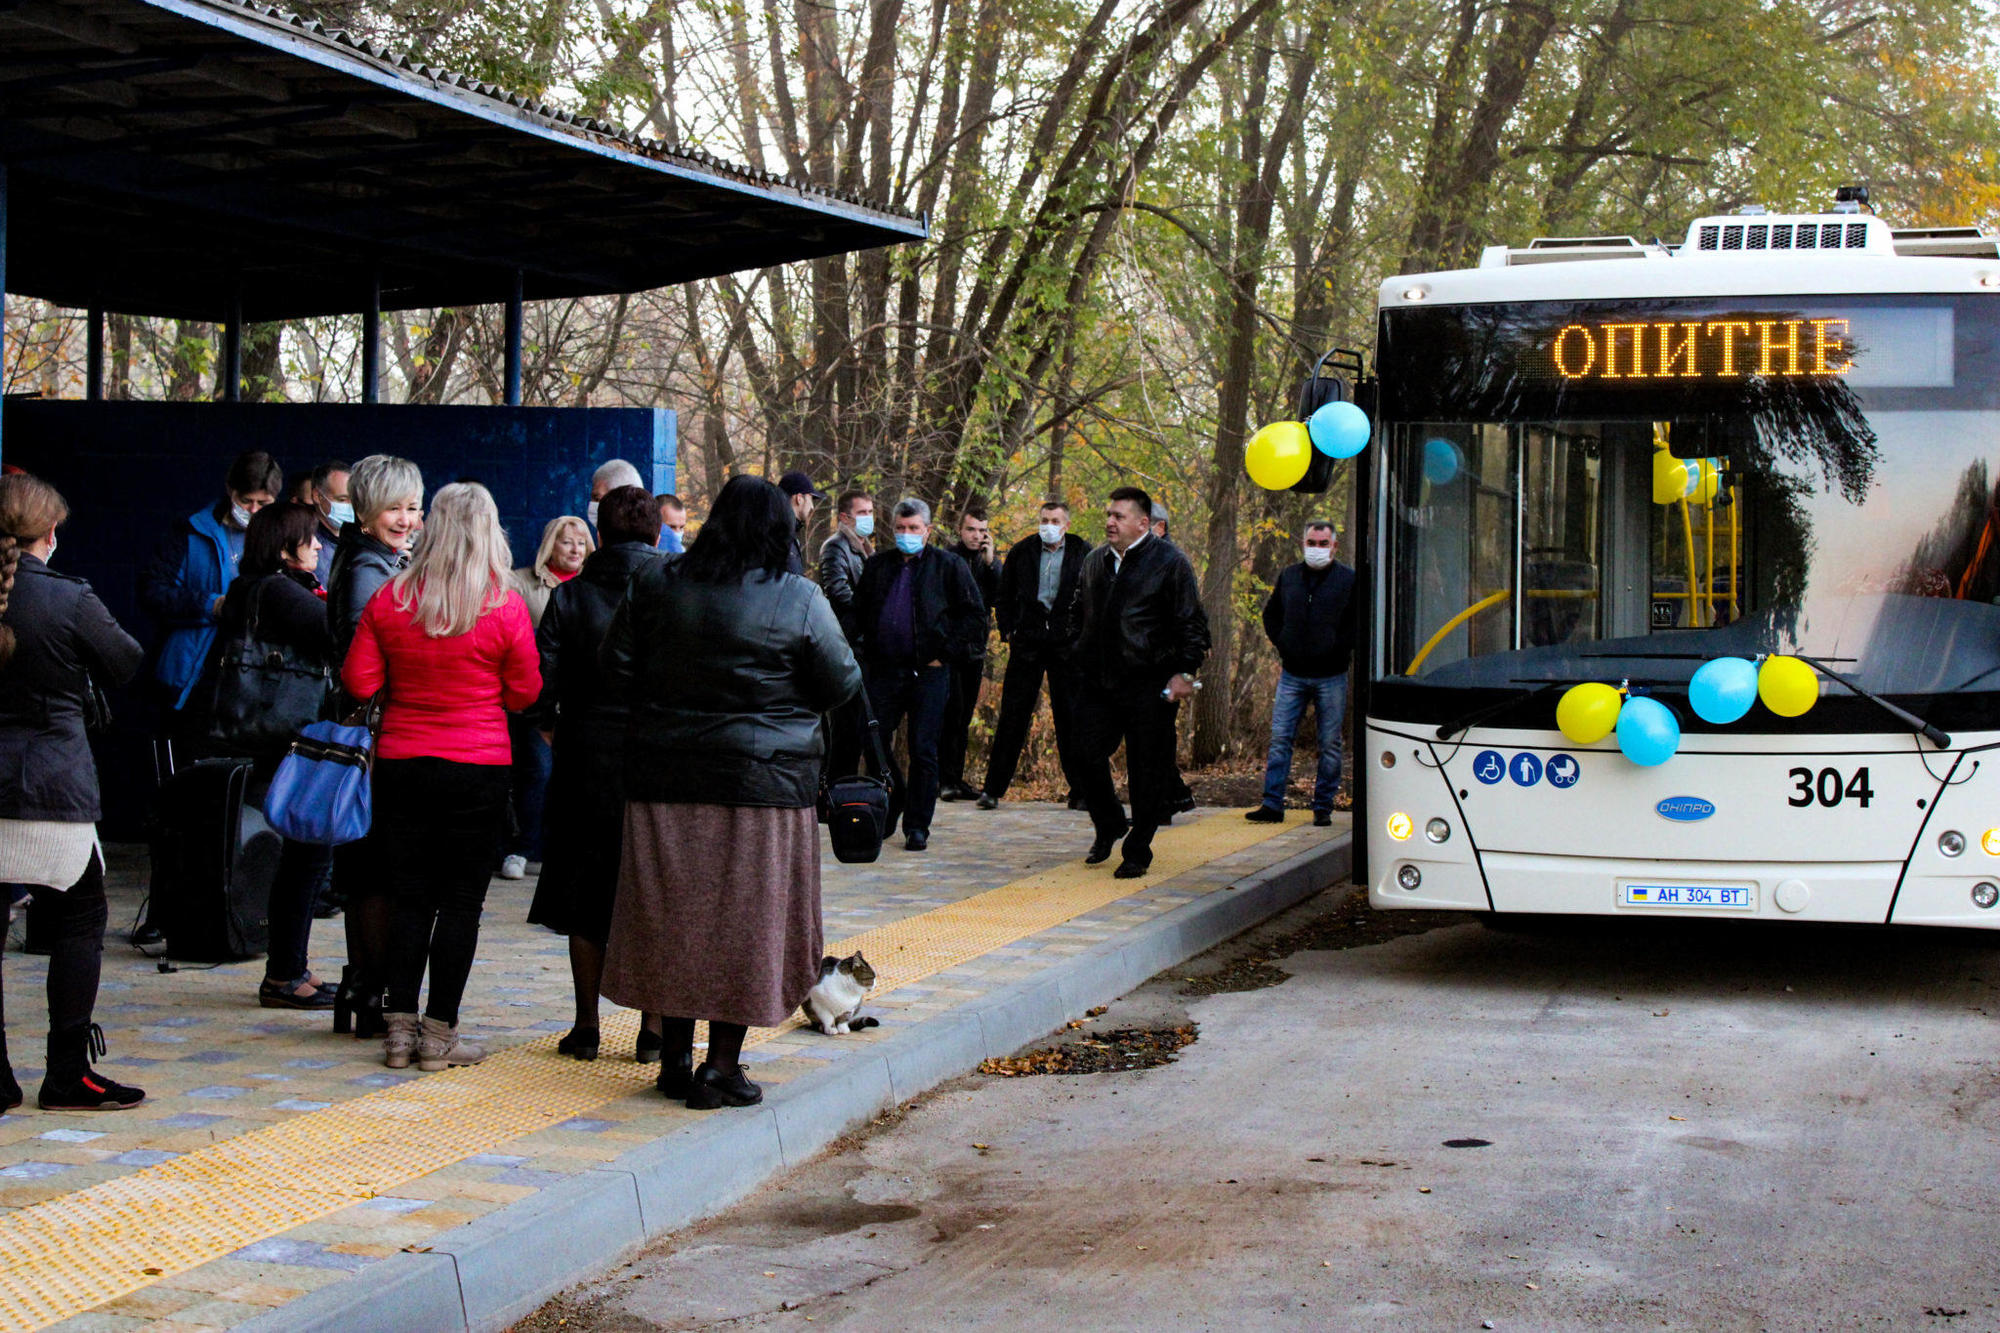 “Чекали 40 років”: в Бахмутській ОТГ відкрили тролейбусний маршрут до селища Опитне (Фото, розклад)